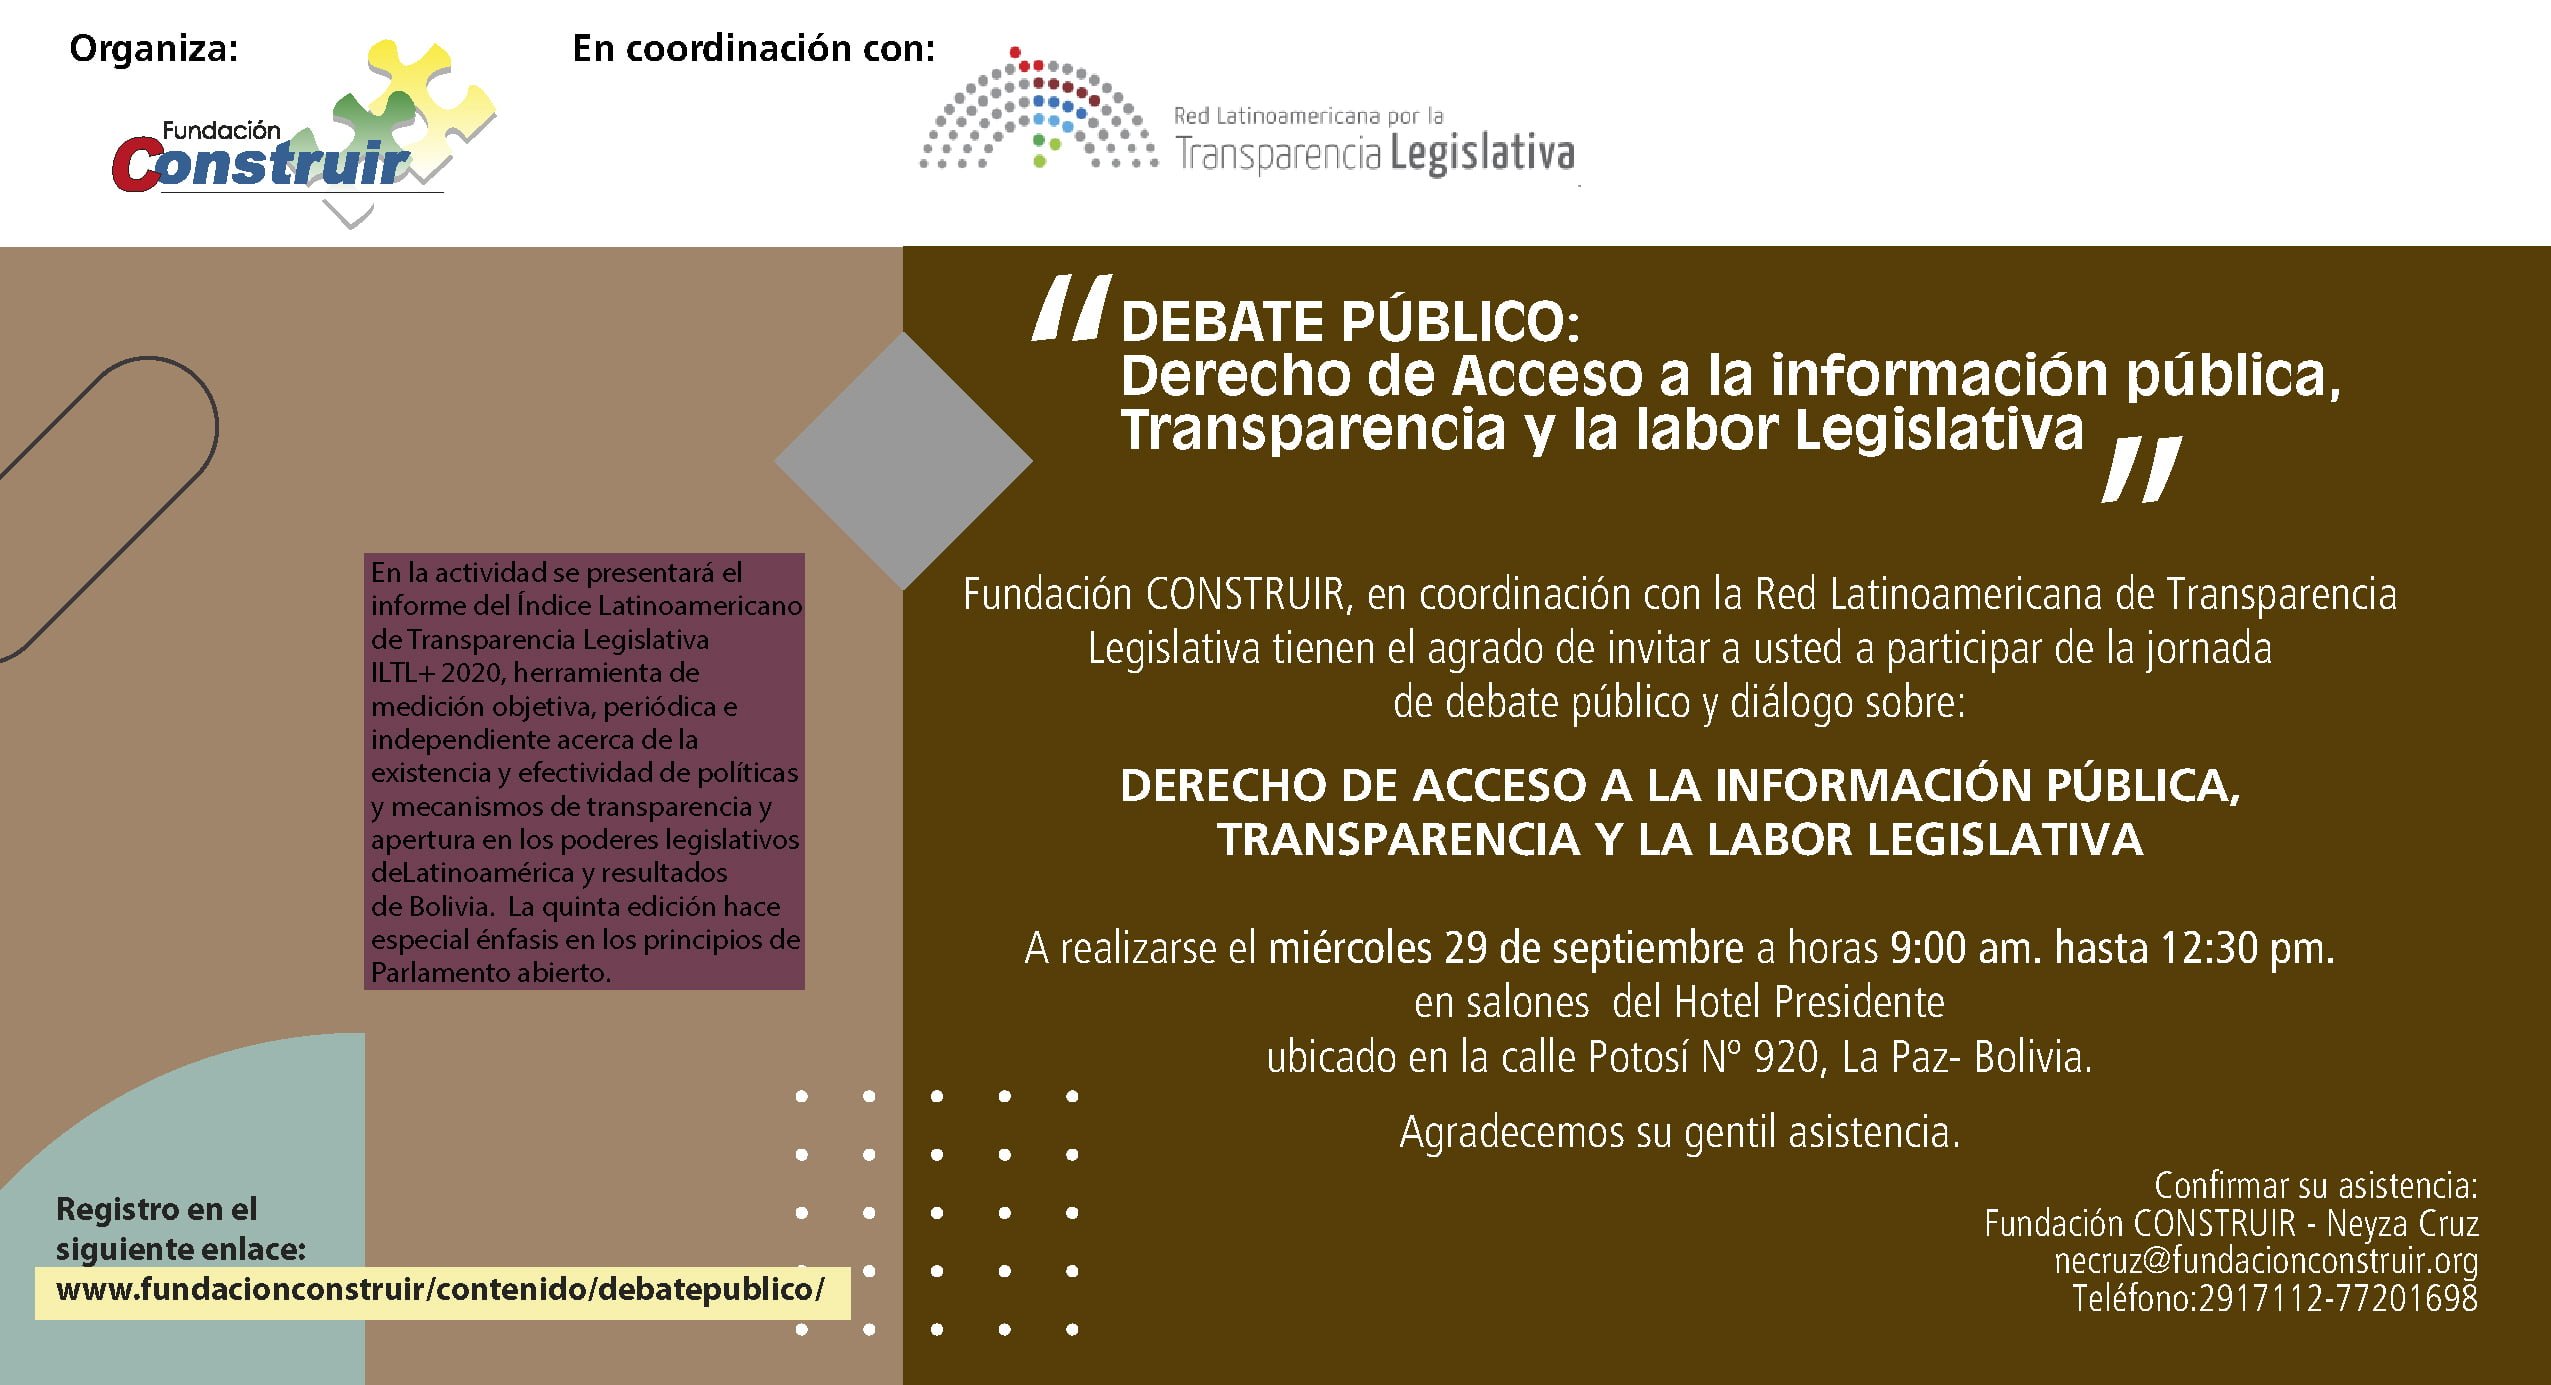 Debate público: Derecho de Acceso a la información pública, Transparencia y la labor Legislativa